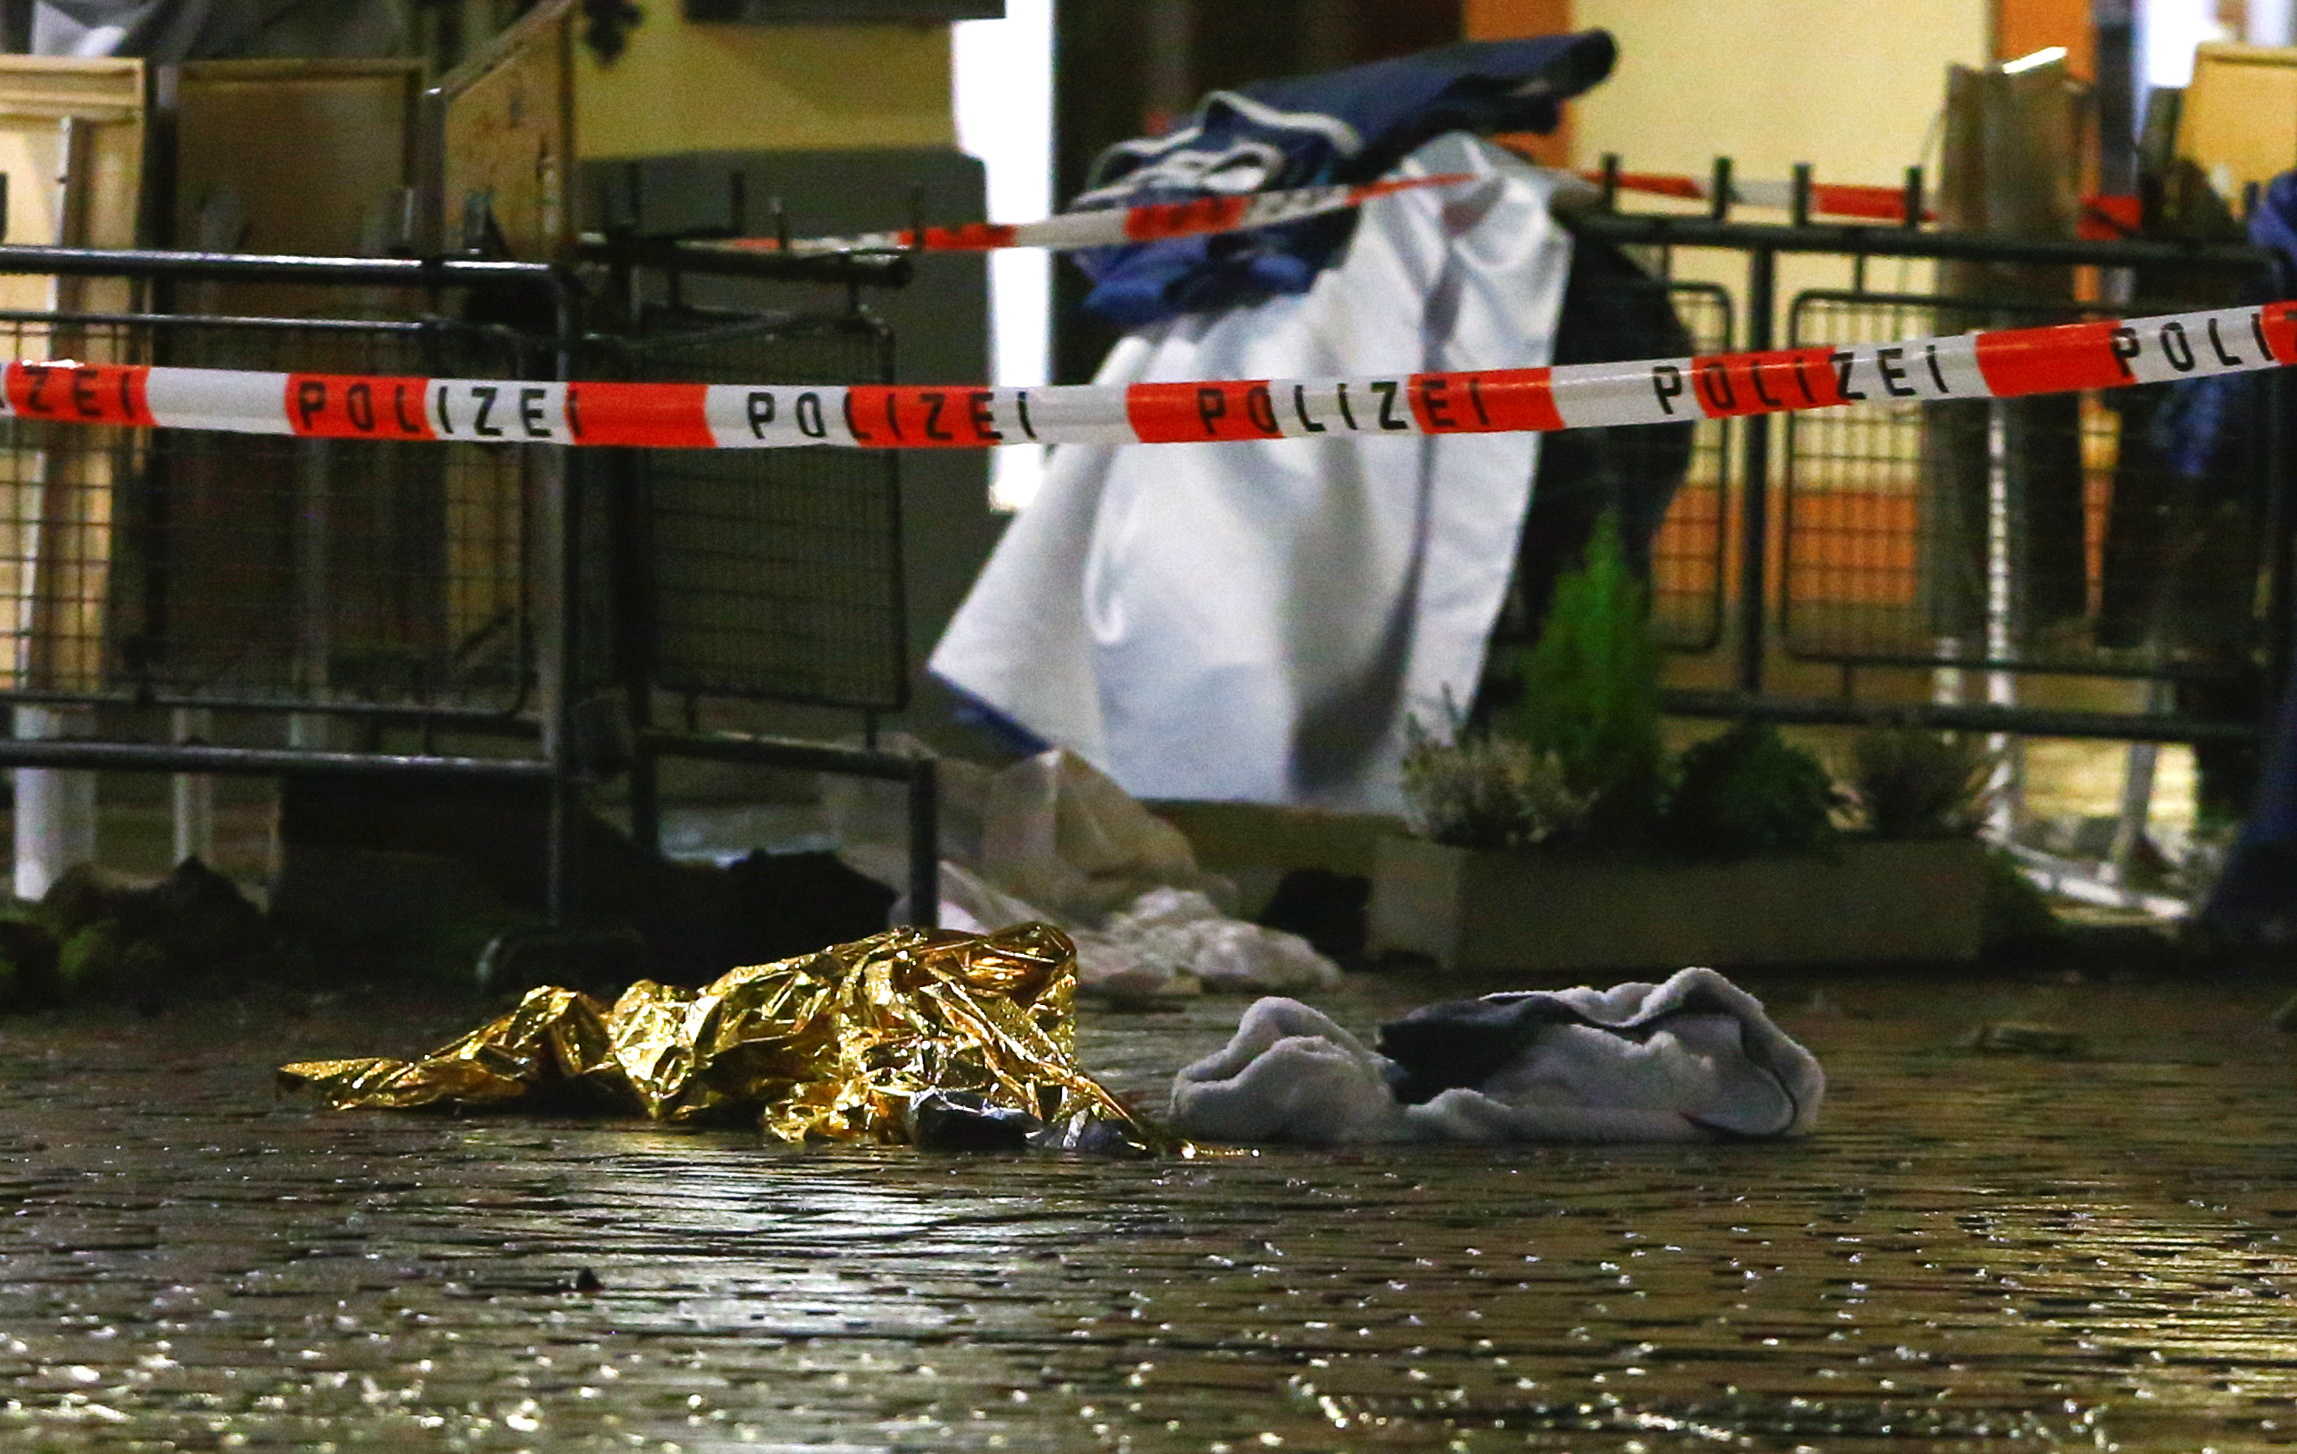 Γερμανία: 5 οι νεκροί από την επίθεση στο Τρίερ – Έκανε ελιγμούς με το αυτοκίνητο για να τους πετύχει! (pics)